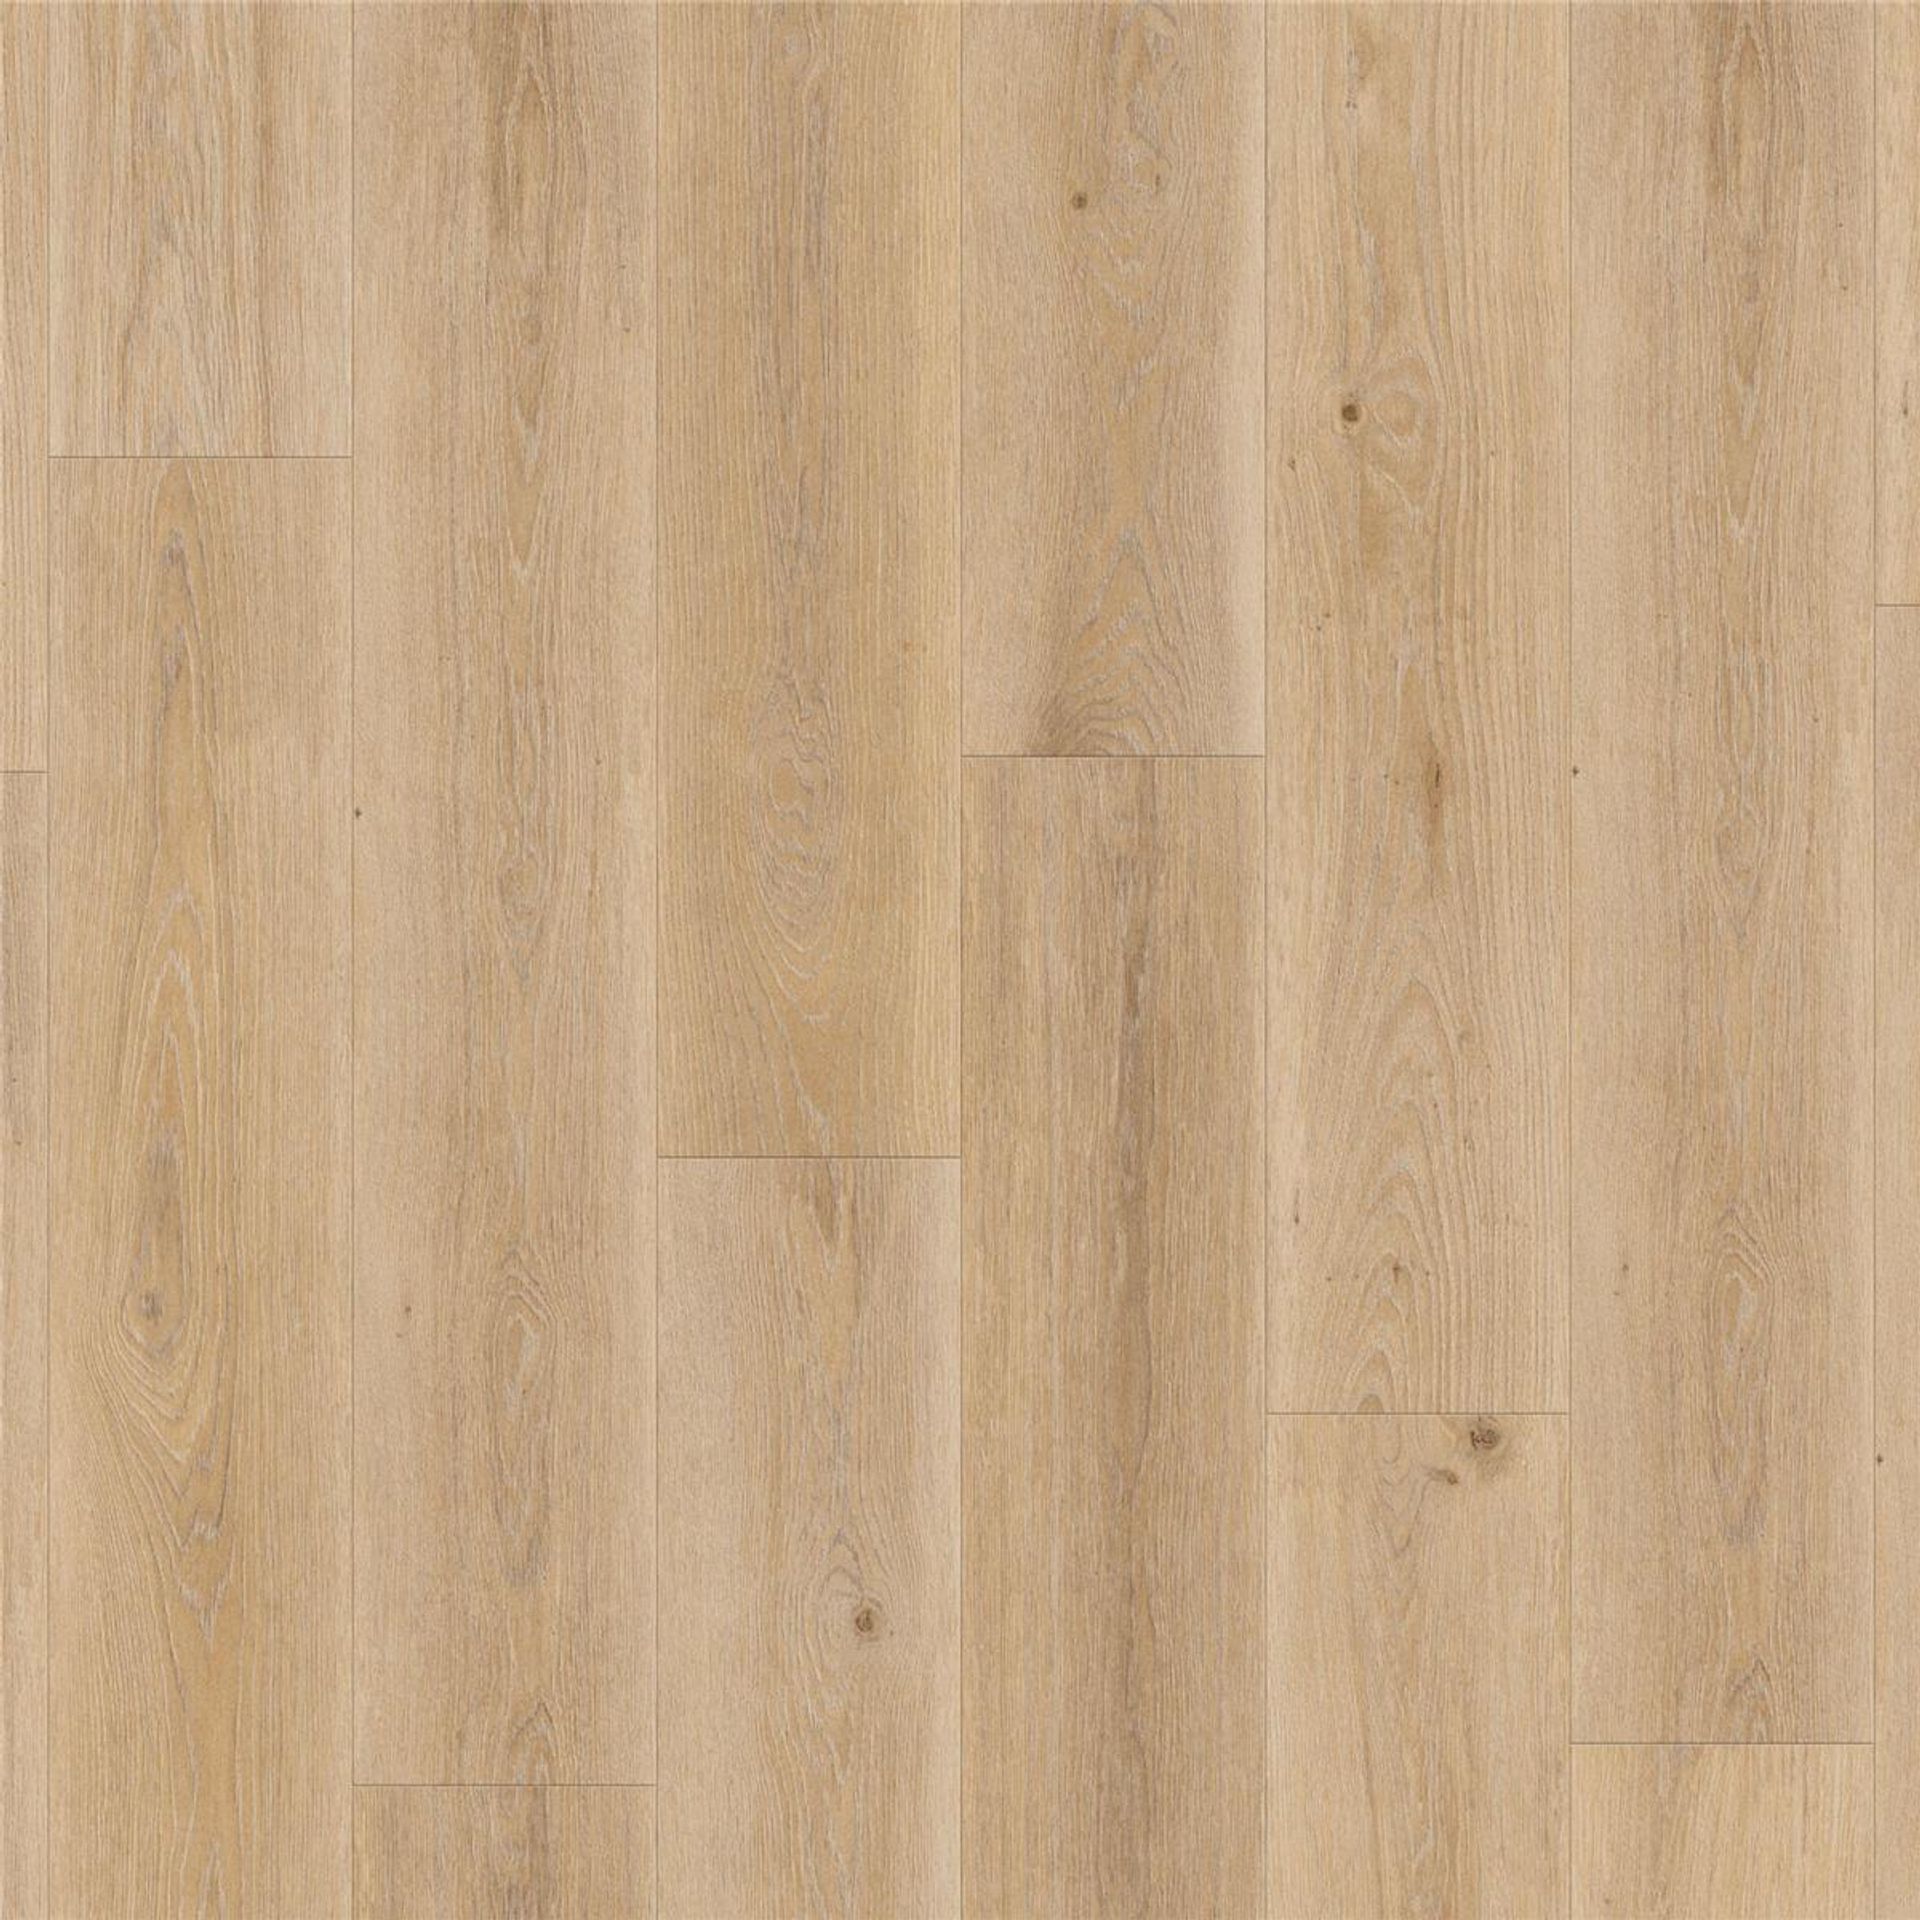 Designboden AUTHENTICS-Highland Oak-Golden Planke 120 cm x 20 cm - Nutzschichtdicke 0,55 mm